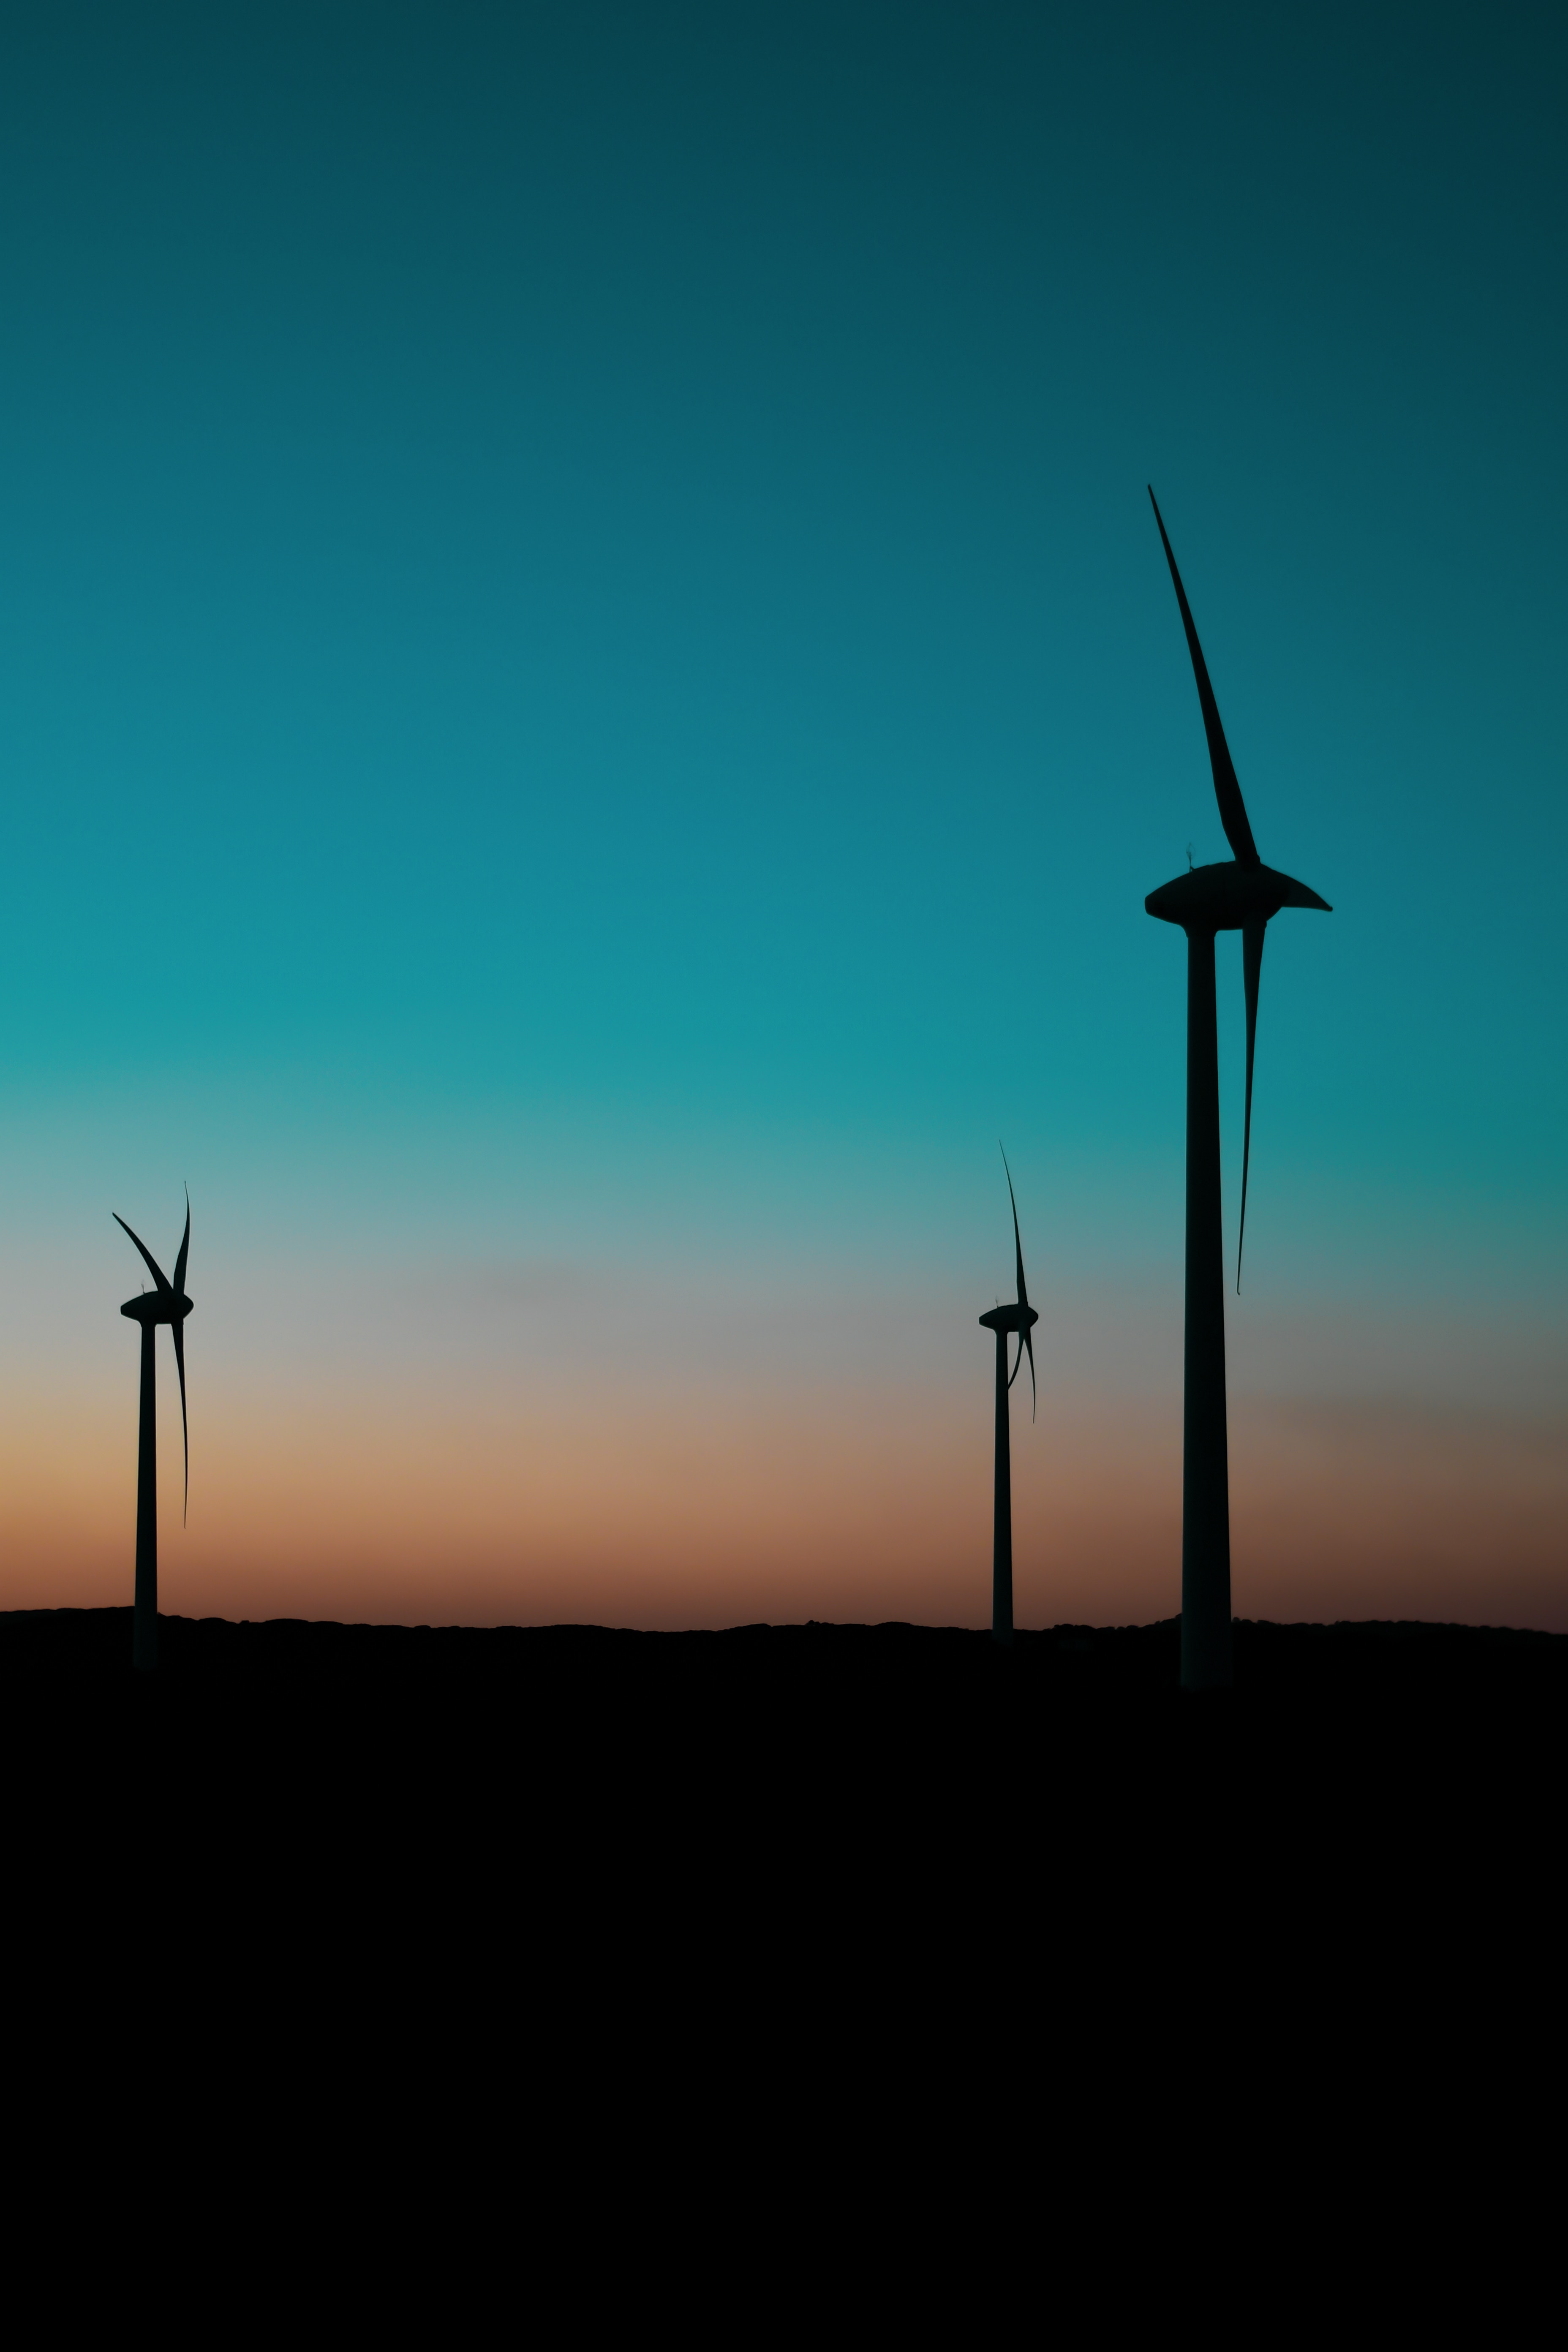 twilight, dusk, wind power plant, turbine 4K iPhone